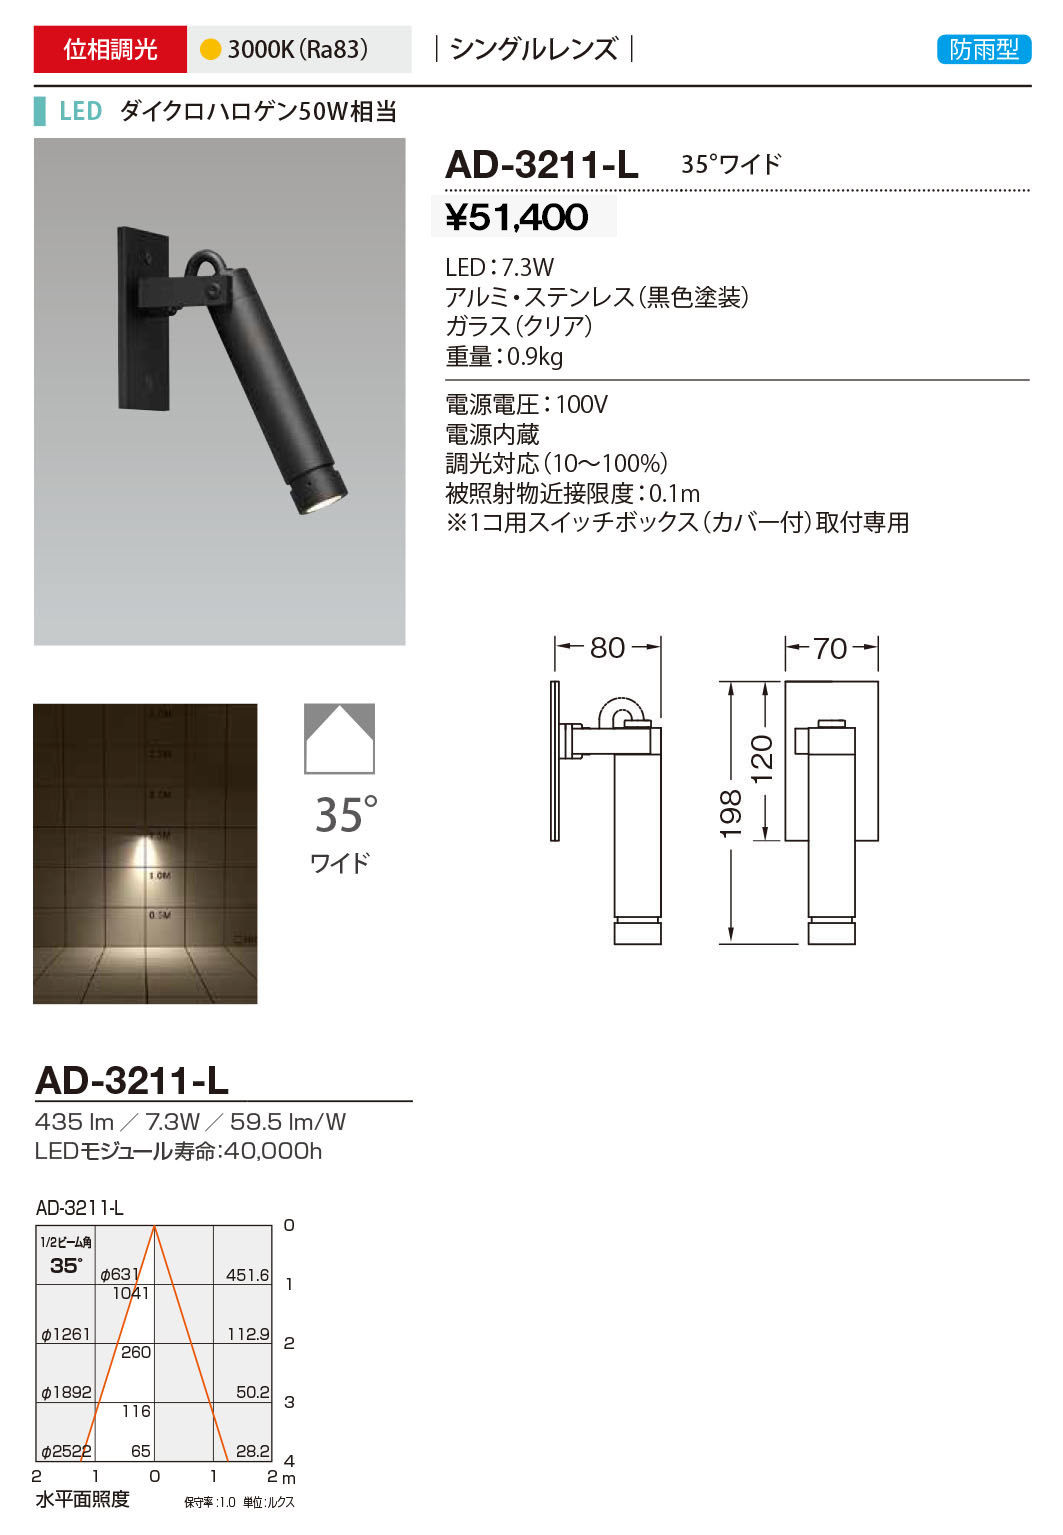 AD-3234-L 山田照明 屋外スポットライト 黒 LED 電球色 調光 広角 - 2